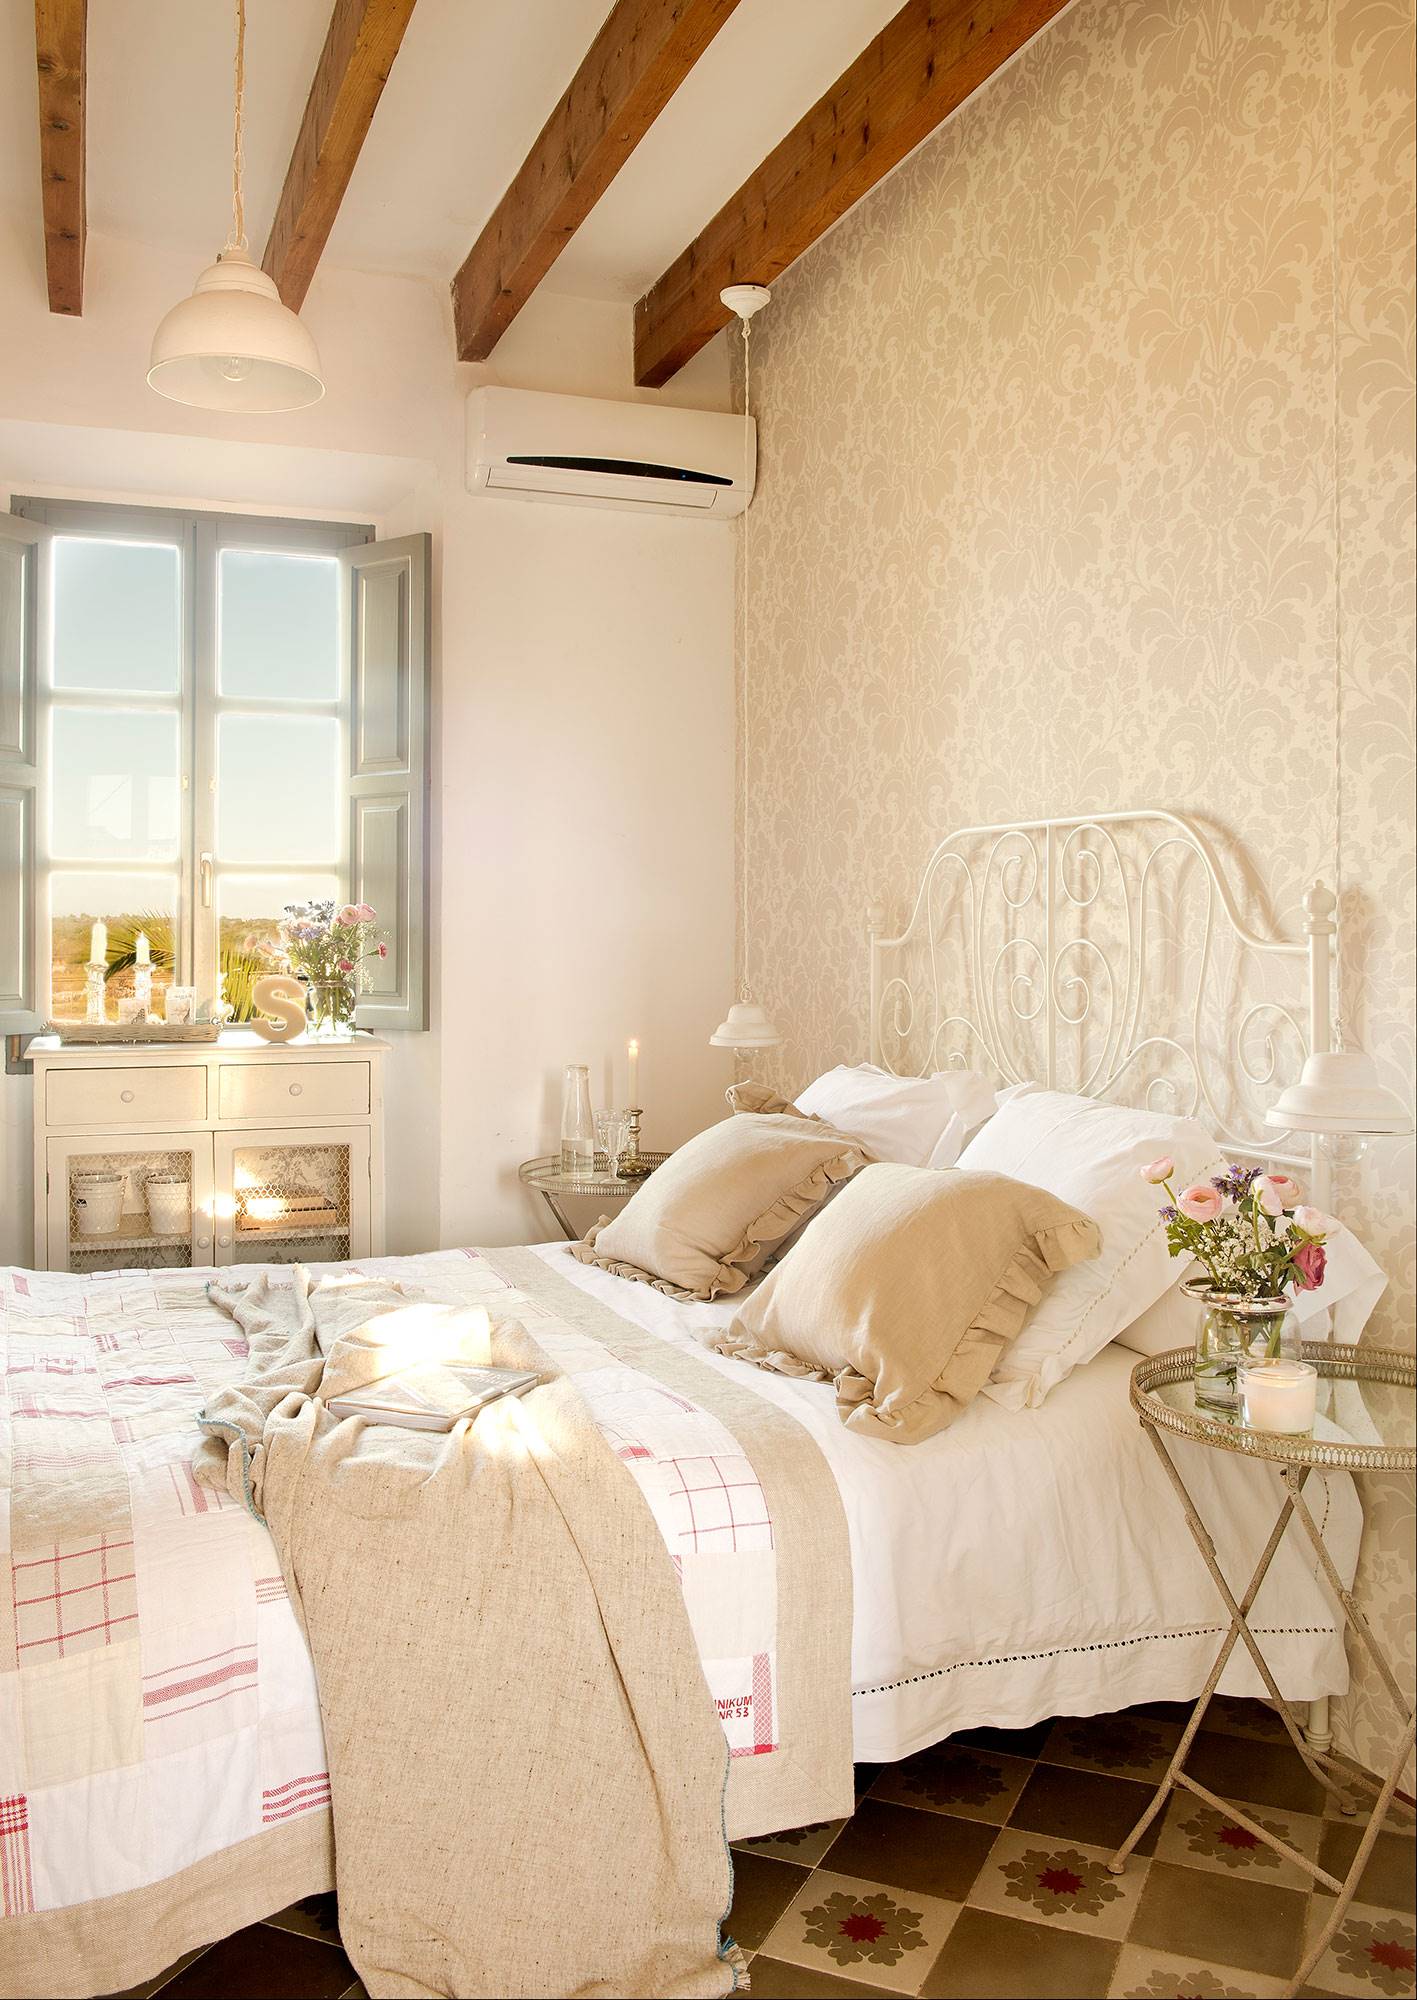 Dormitorio de estilo romántico con cama de forja blanca 00378454